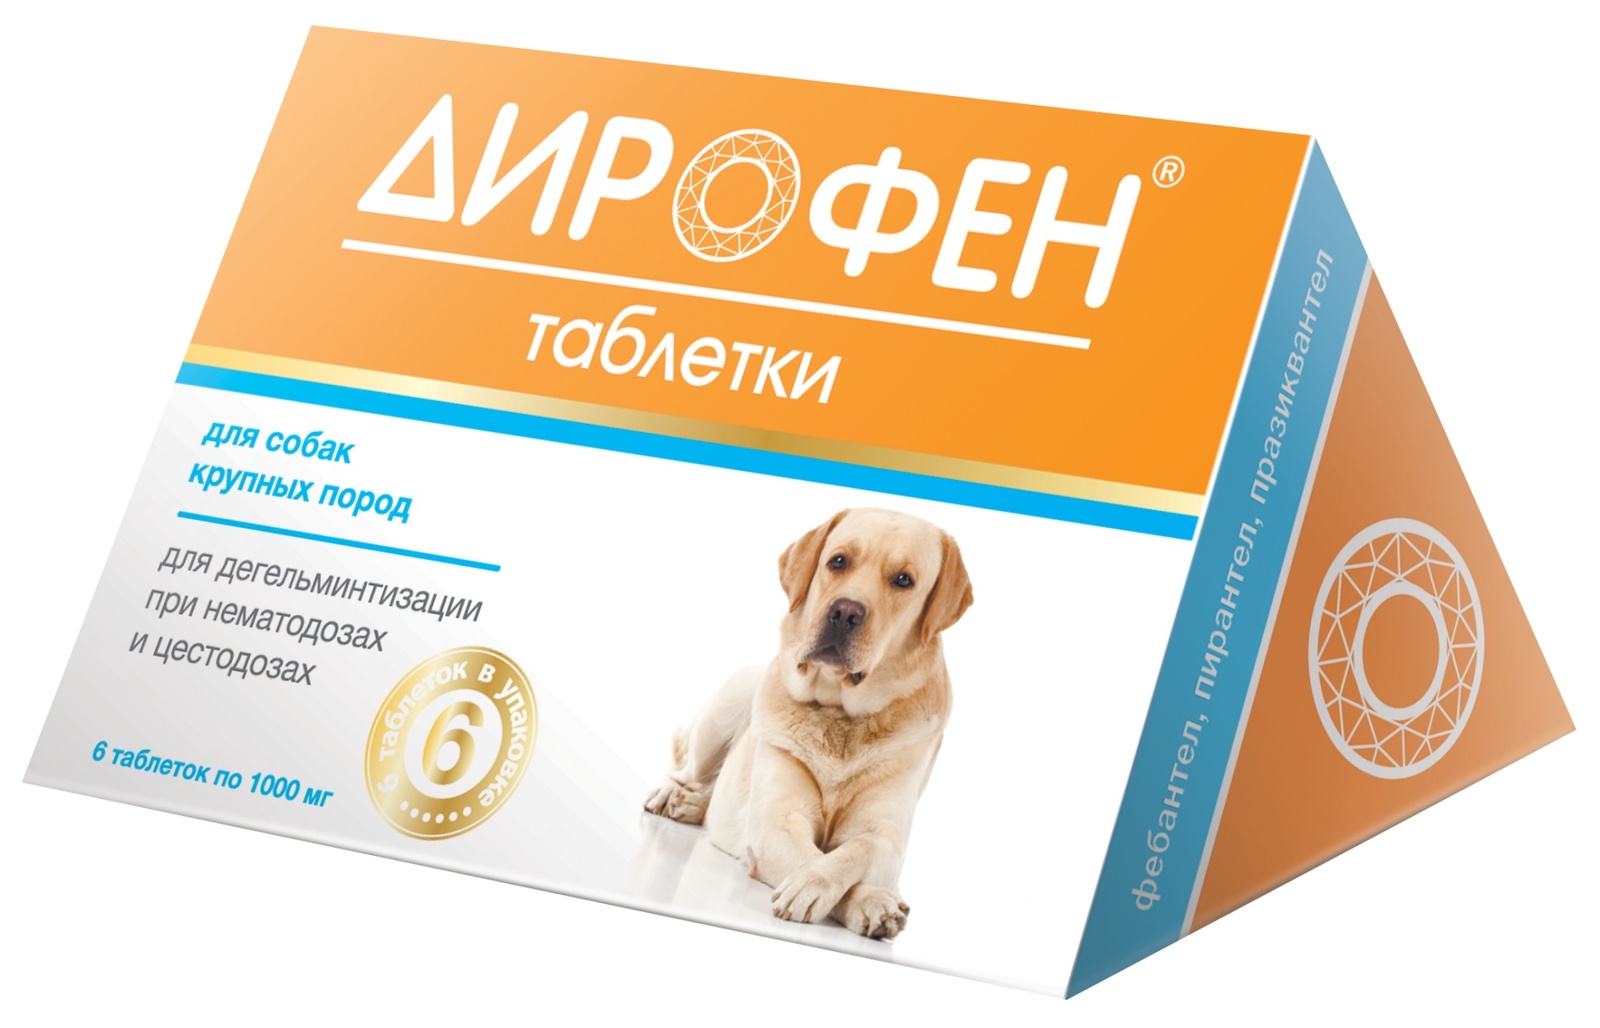 Apicenna Apicenna дирофен Плюс таблетки от глистов для крупных собак (19 г)